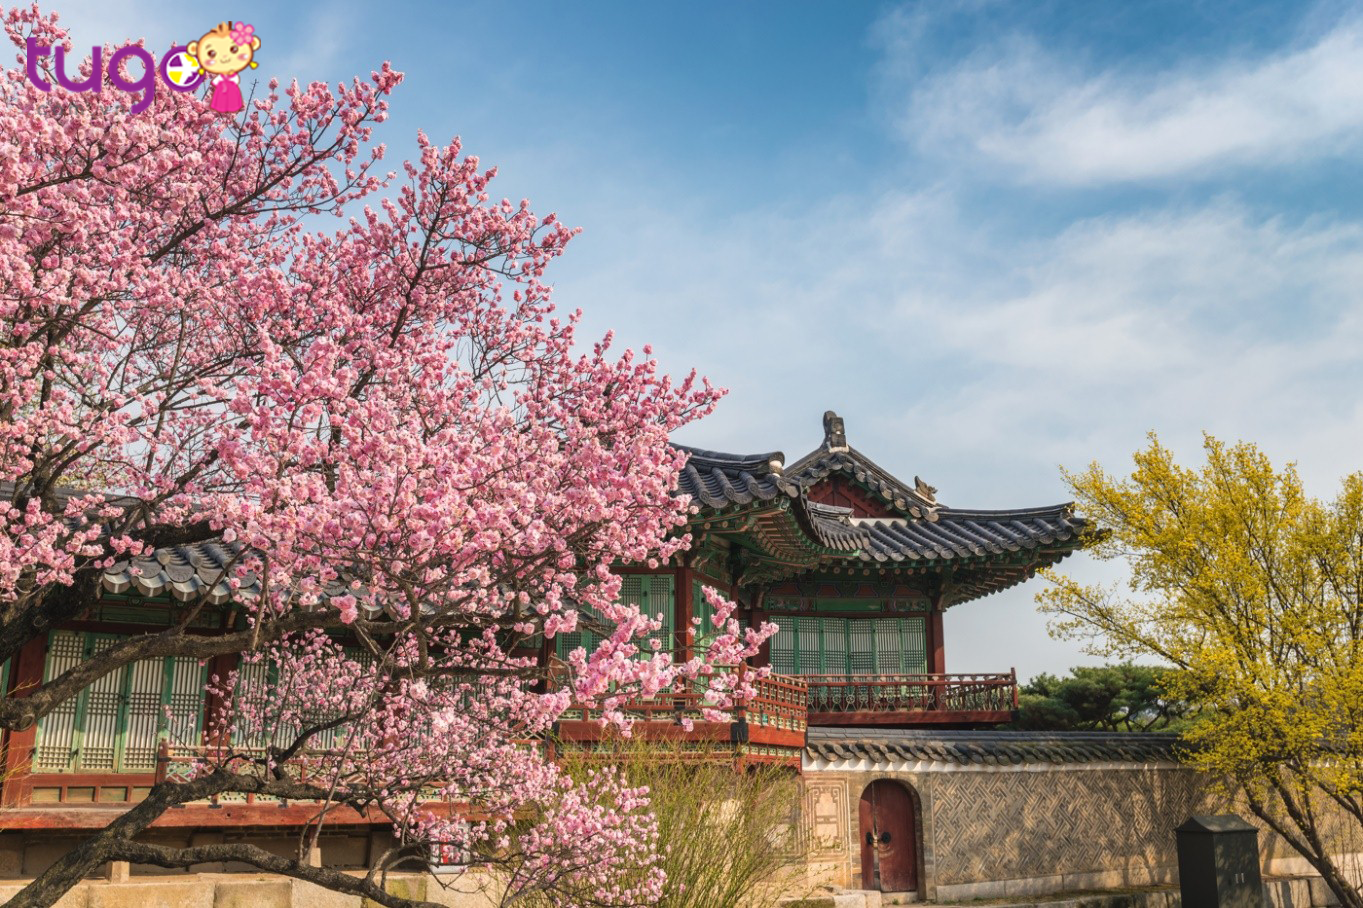 Diện bộ áo truyền thống Hàn Quốc – Hanbok, dạo bước trên những con đường trải đầy hoa anh đào Hàn Quốc trong cung điện